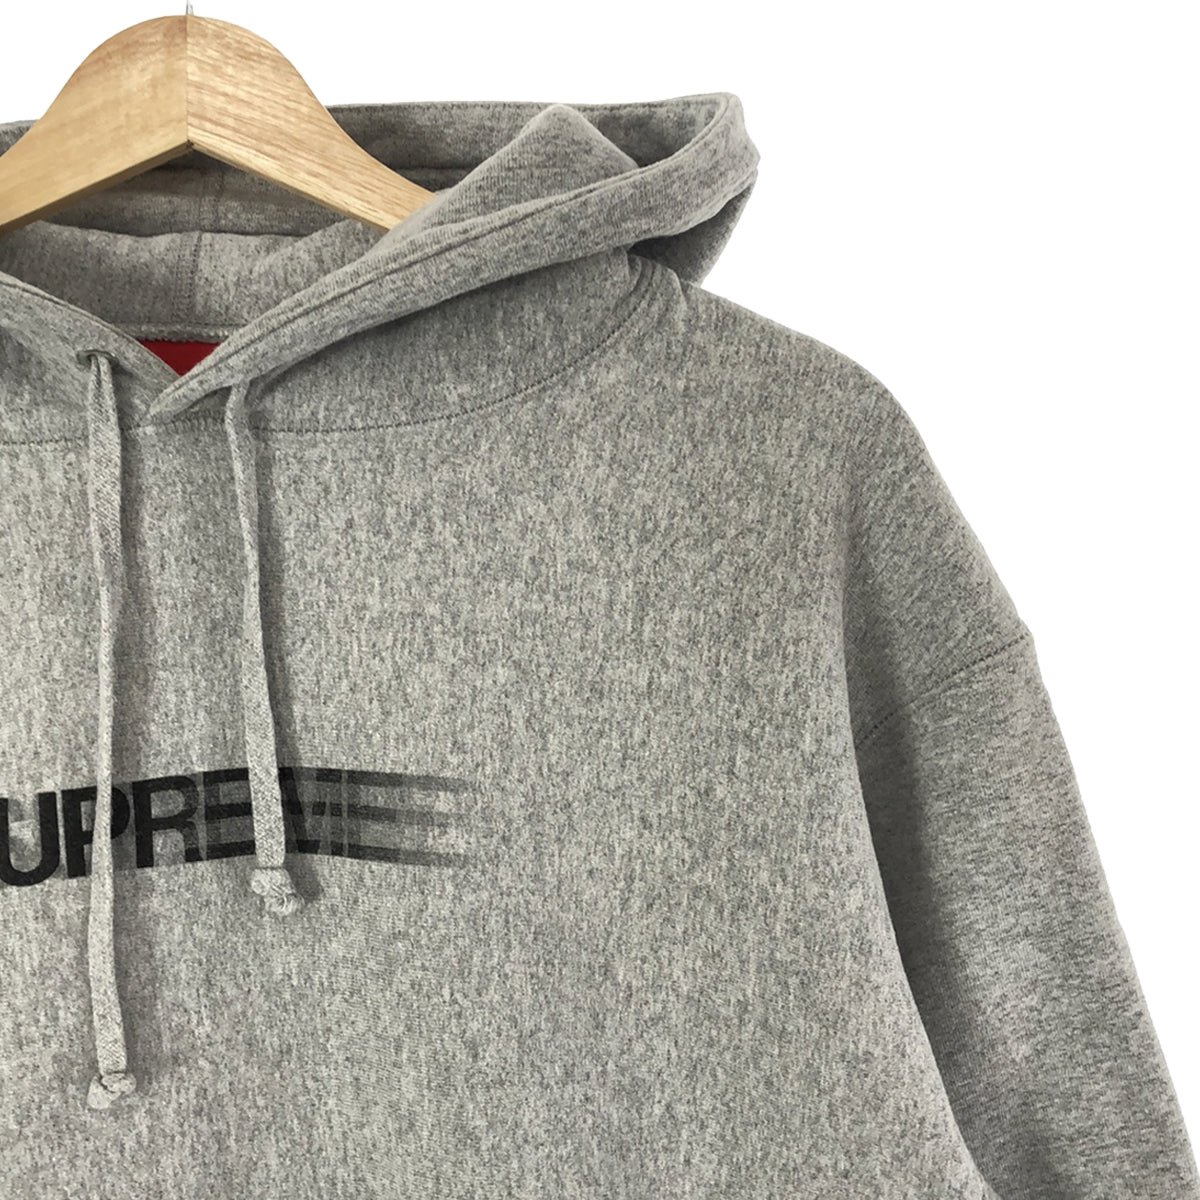 SUPREME / シュプリーム | Motion Logo Hooded Sweatshirt / モーション ロゴ フーデッド スウェットシャツ  | M | メンズ